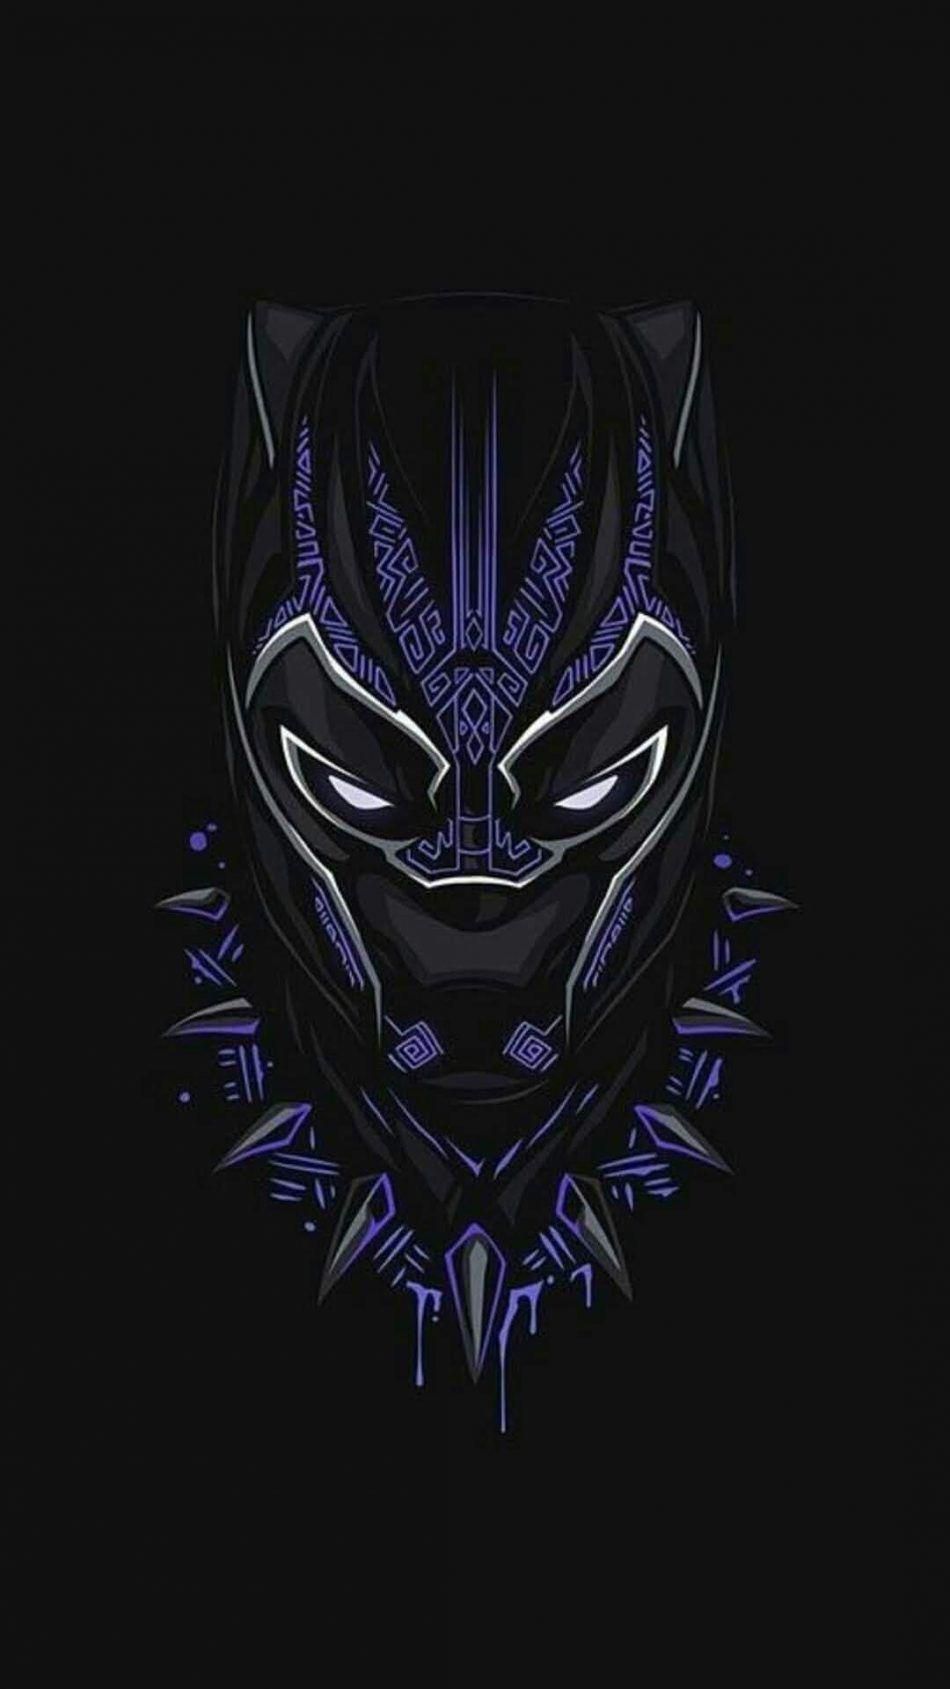 Black Panther RIP: Đây là một bức tranh tưởng niệm tuyệt đẹp, theo dấu chân của người hùng Black Panther người đã đi vào lịch sử. Nó sẽ đem đến cho bạn một cảm giác sâu sắc về sự thiện chí và sức mạnh, để bạn không bao giờ quên về một trong những siêu anh hùng lớn nhất của thế giới.